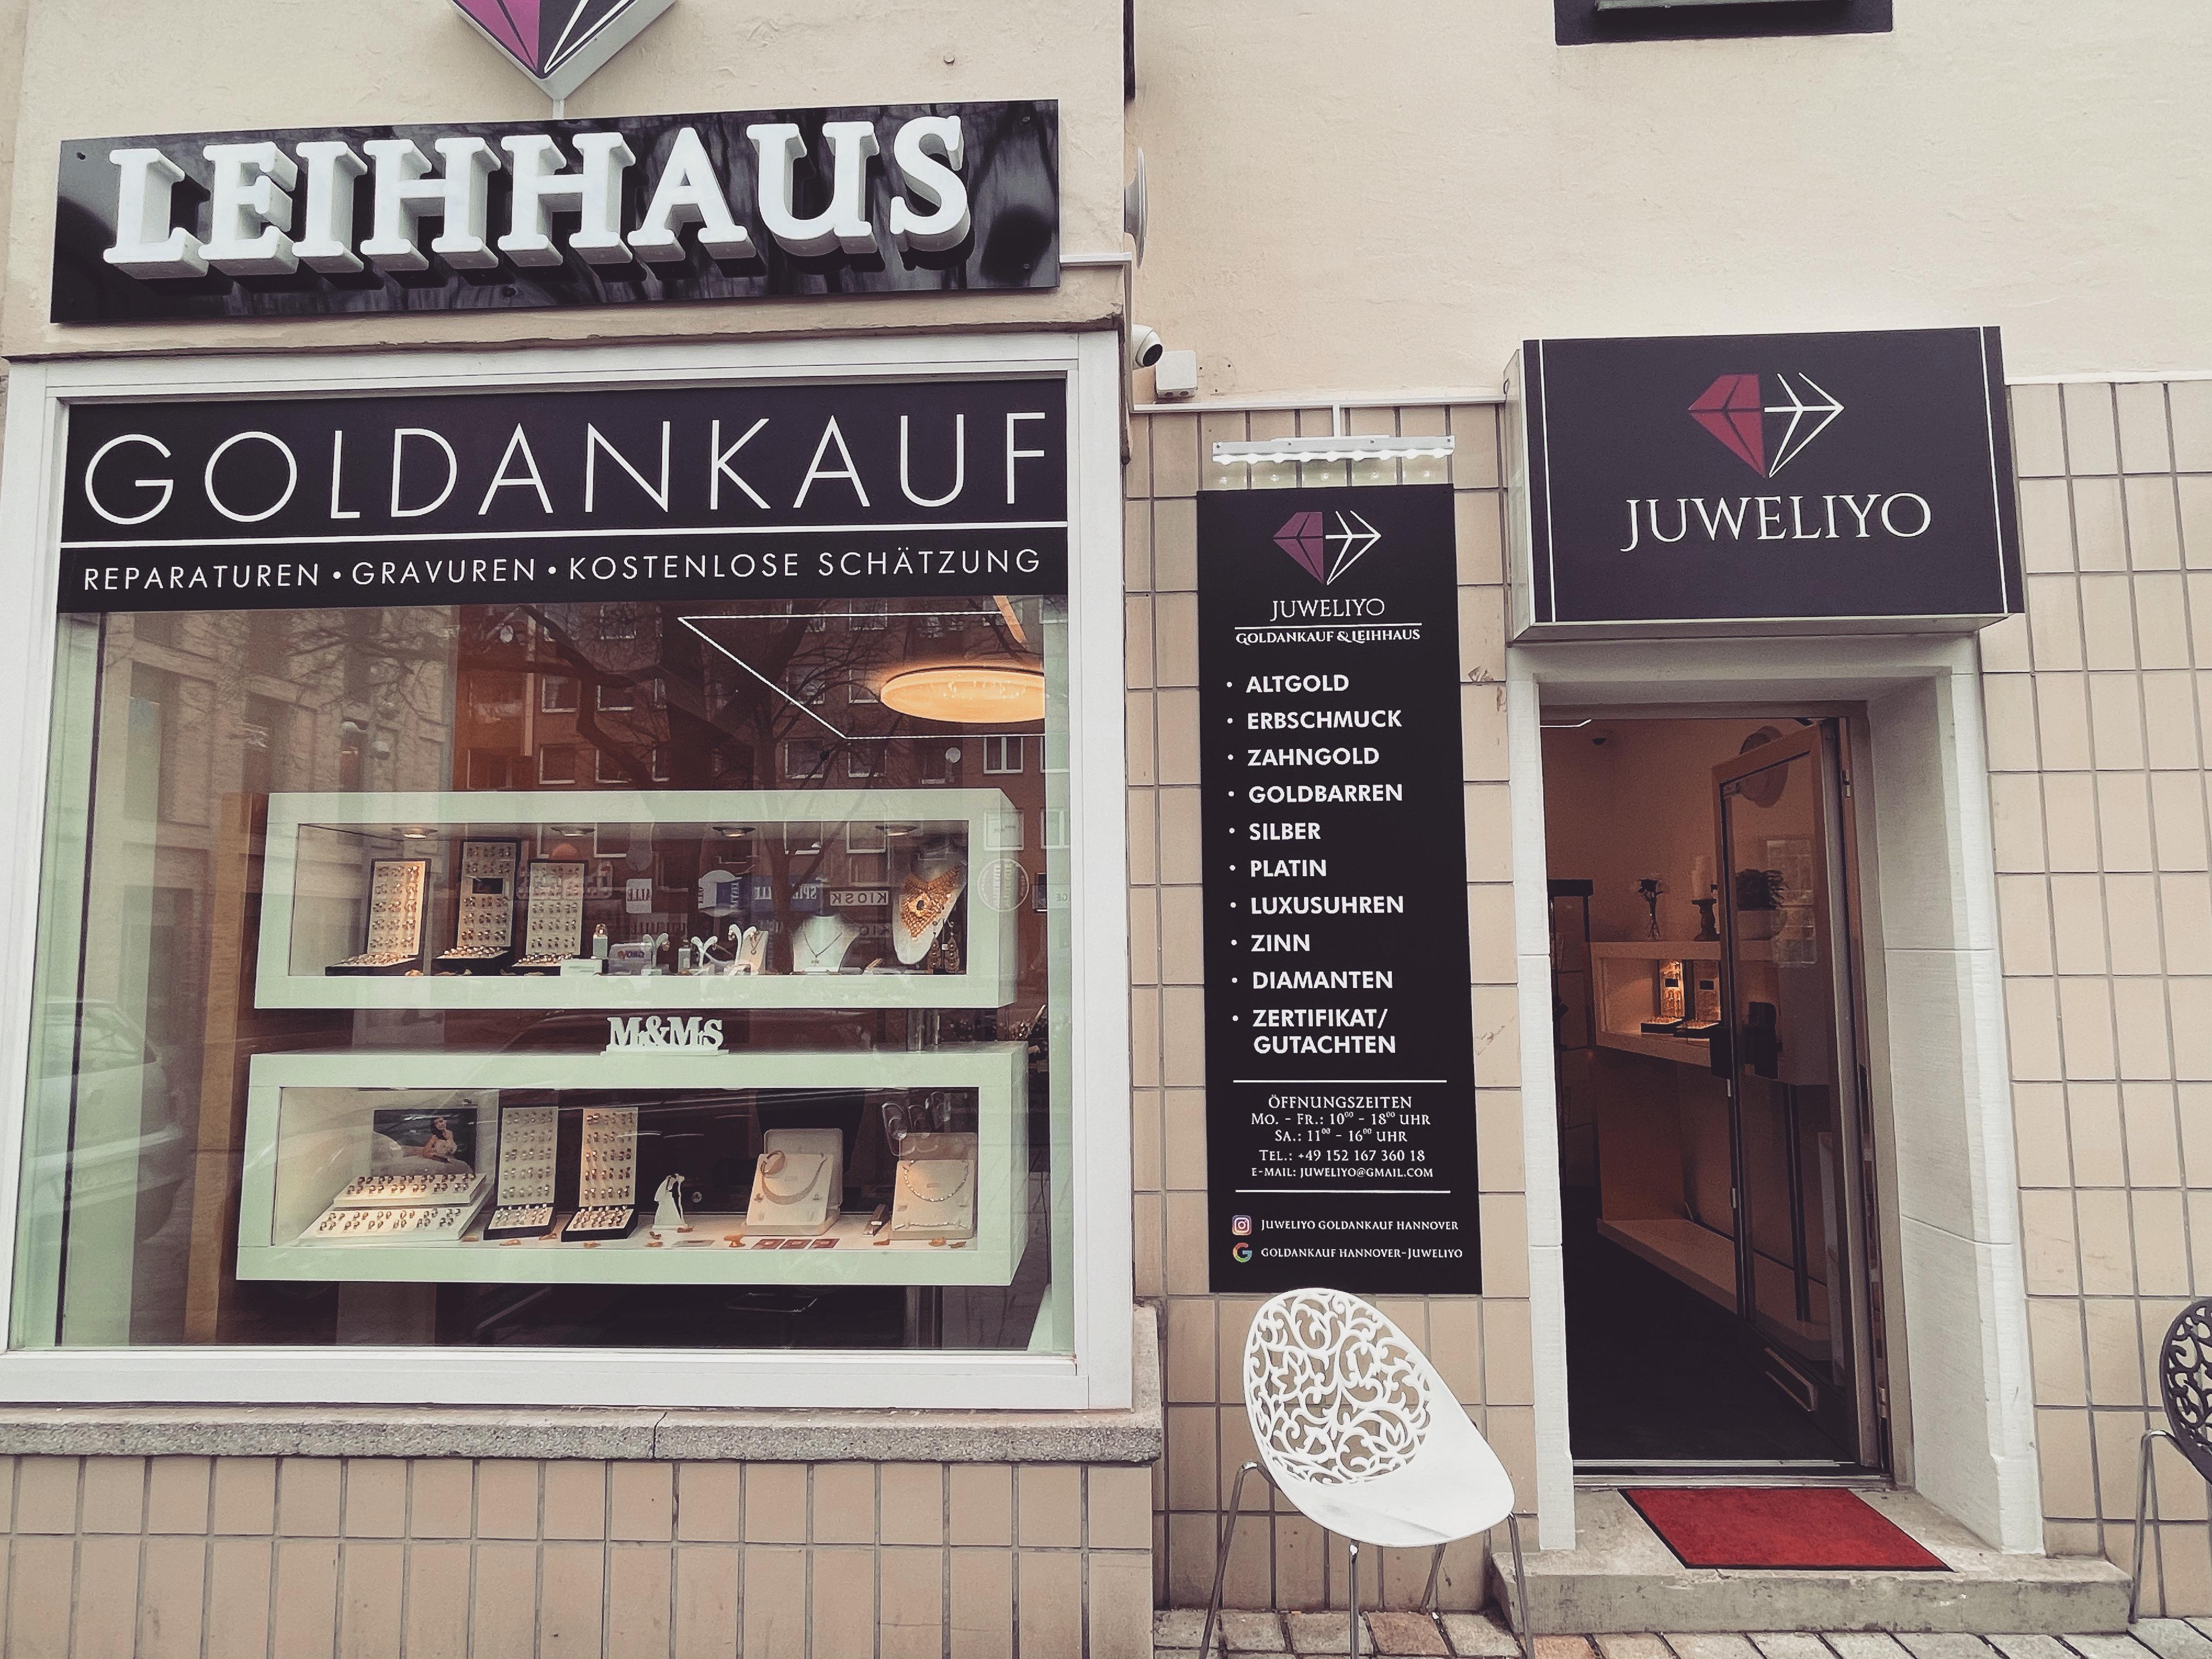 Bilder Goldankauf & Leihhaus Hannover- Juweliyo GmbH